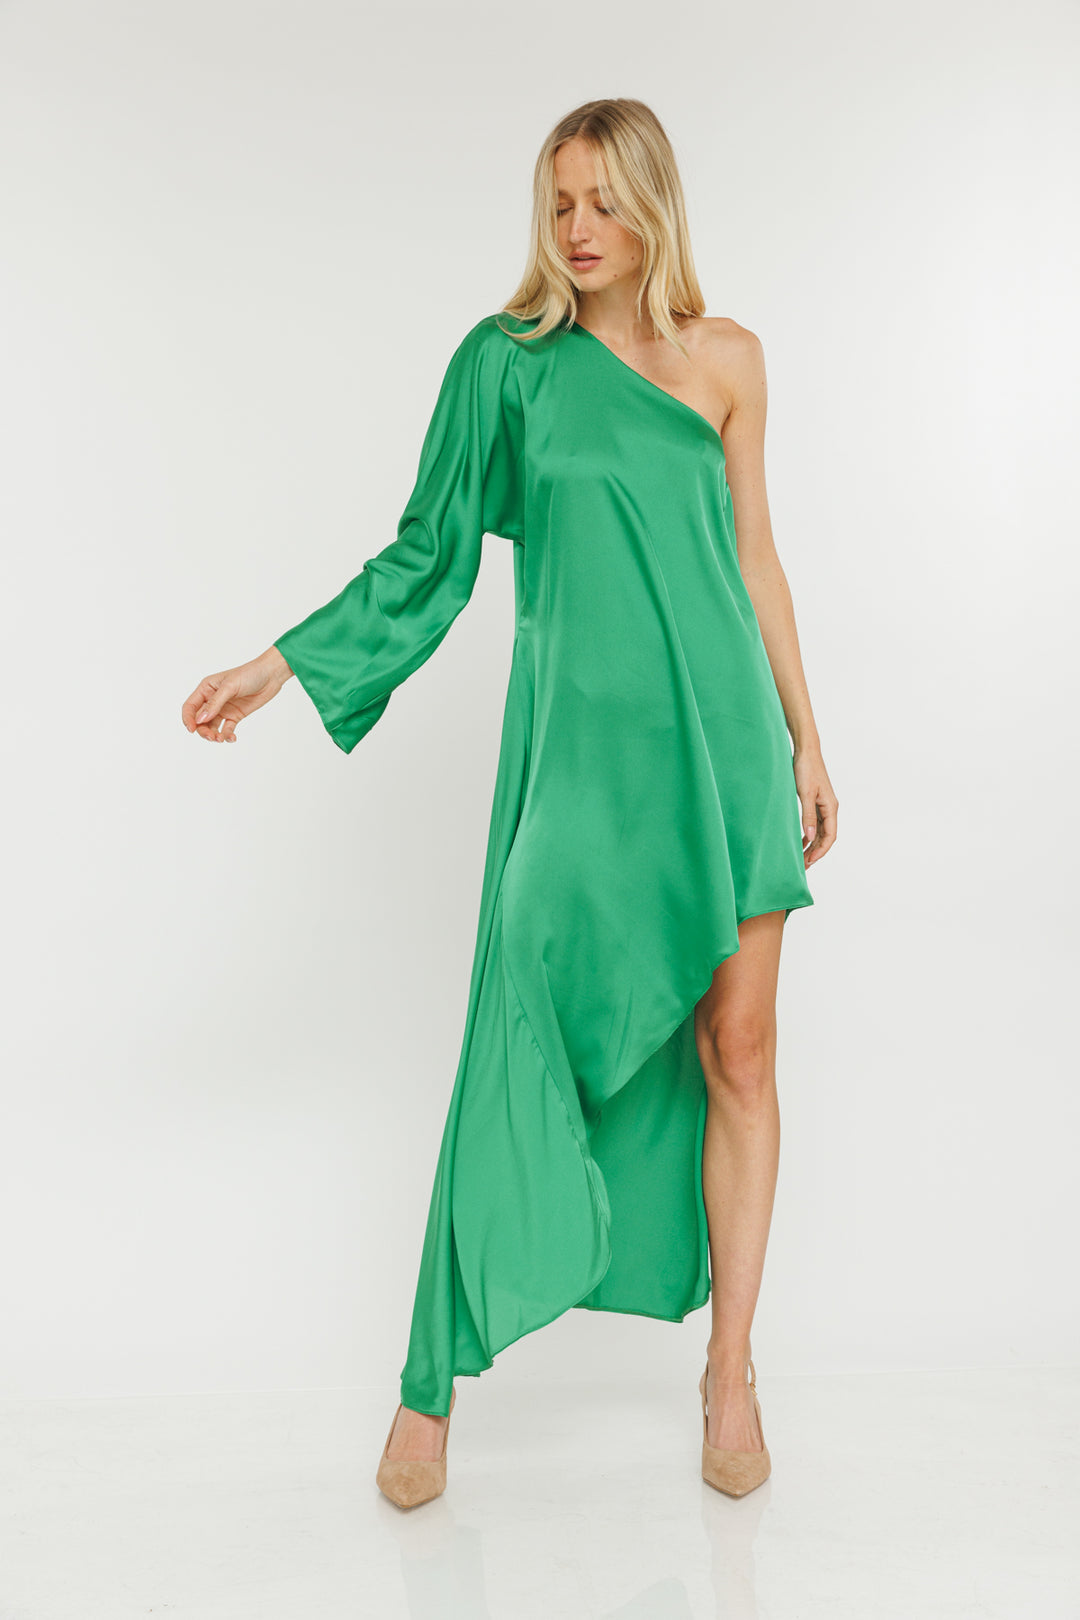 שמלת מידי וואן שולדר Nersic בצבע ירוק